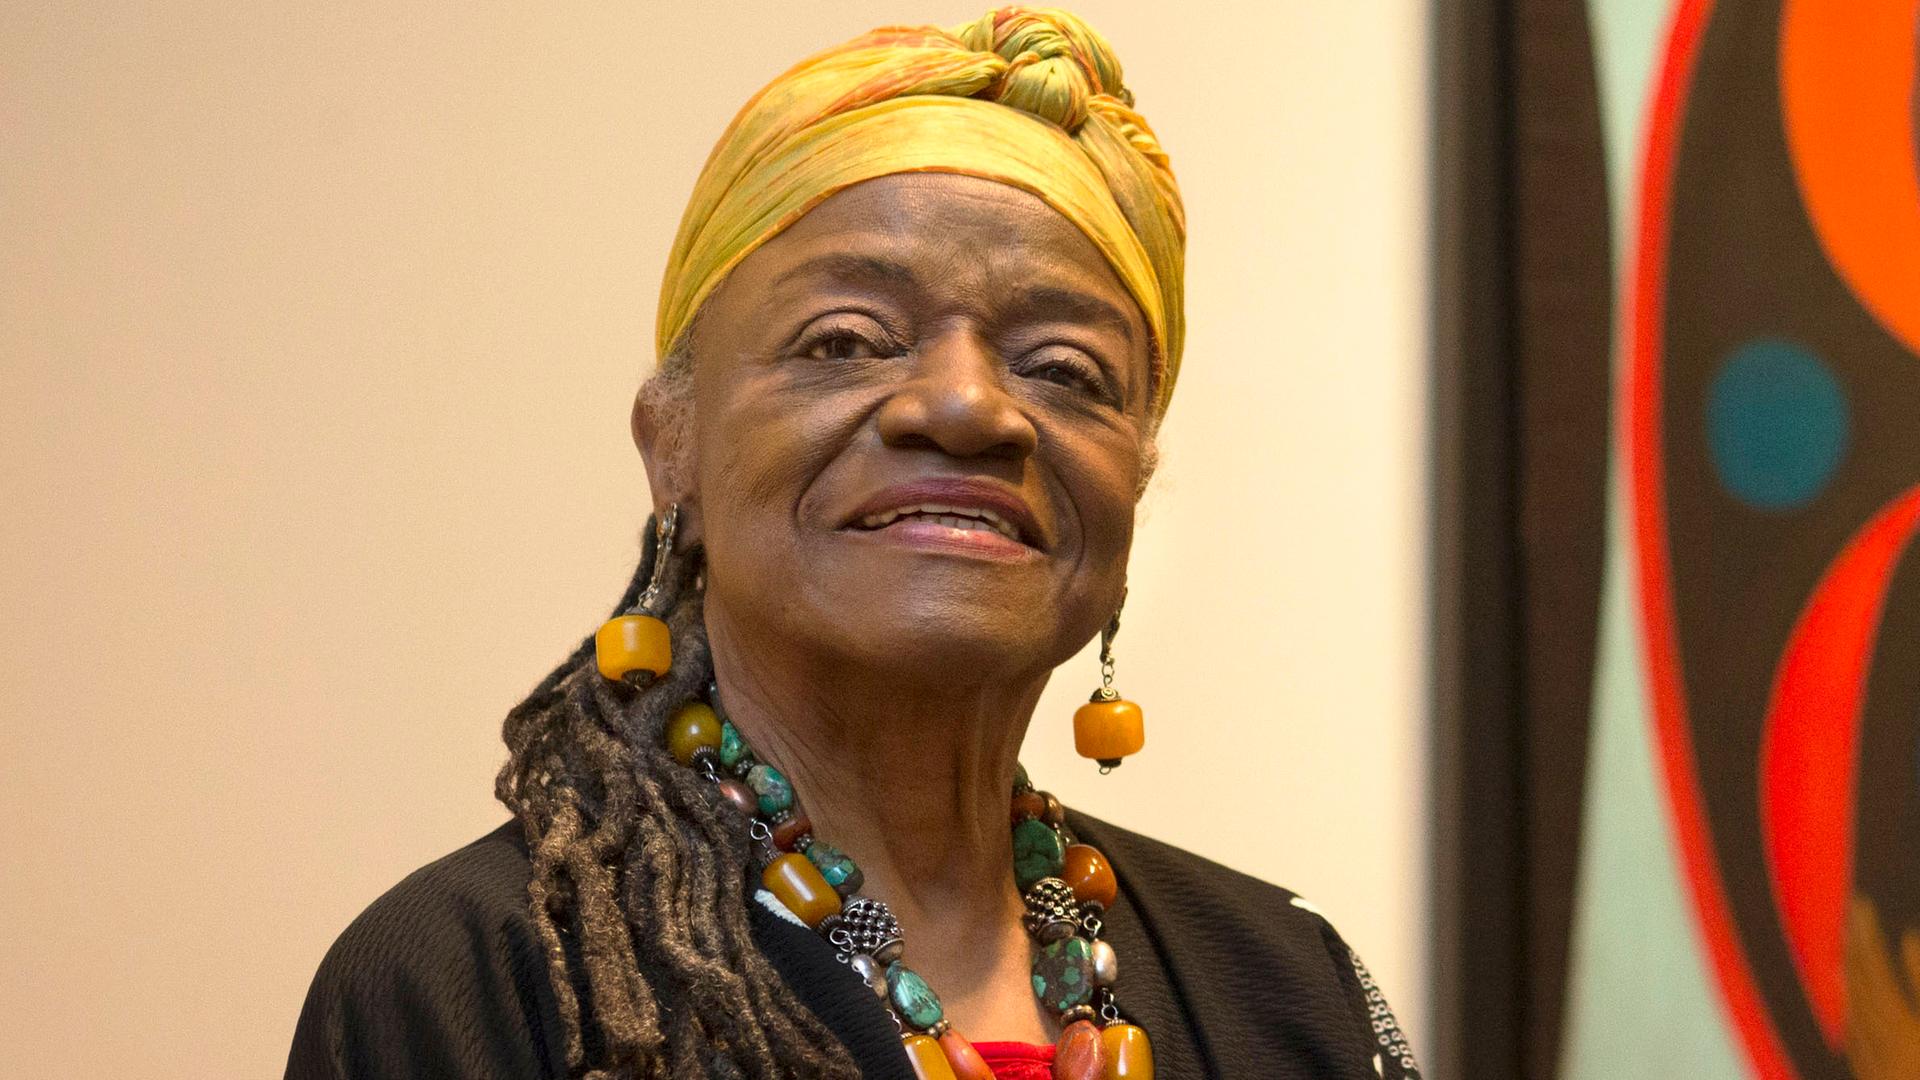 Faith Ringgold, Künstlerin, Autorin und Wegbereiterin für afro-amerikanische Künstlerinnen